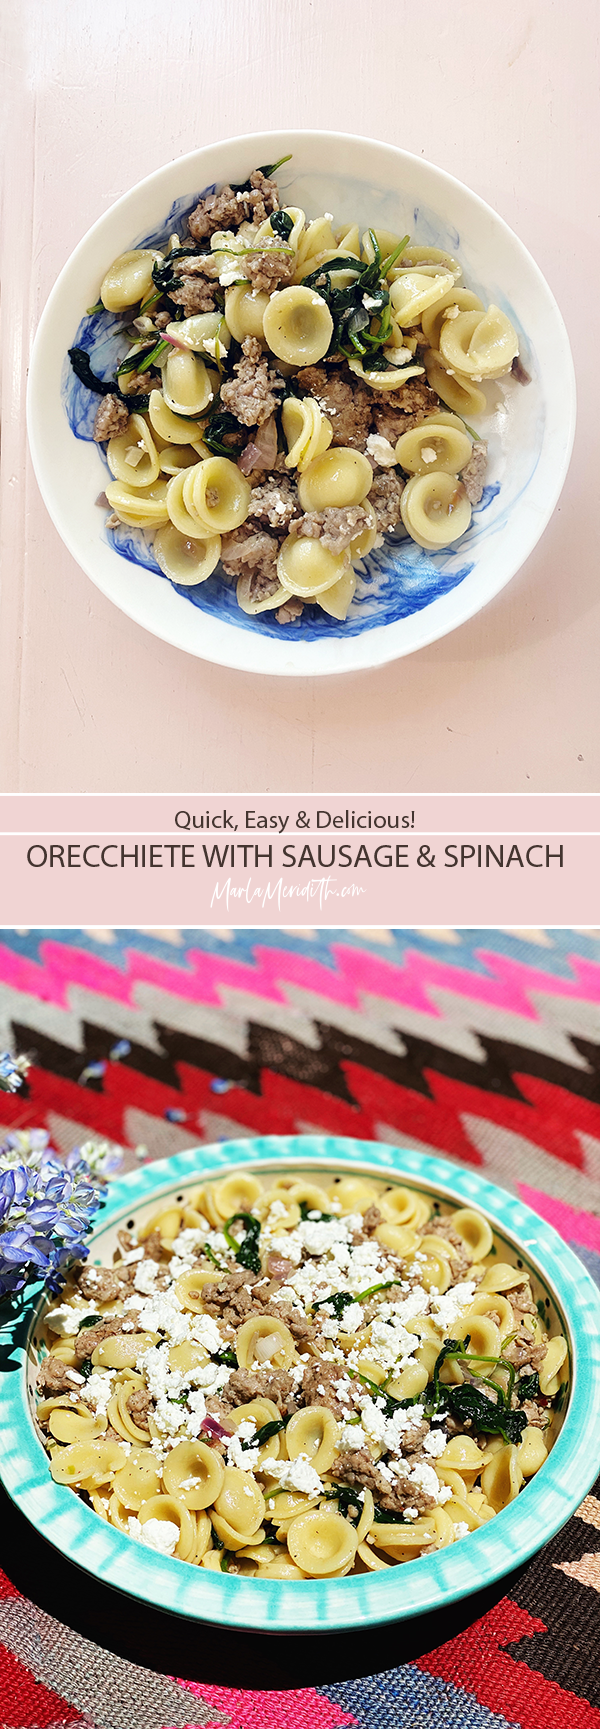 Orecchiette with Sausage & Spinach recipe